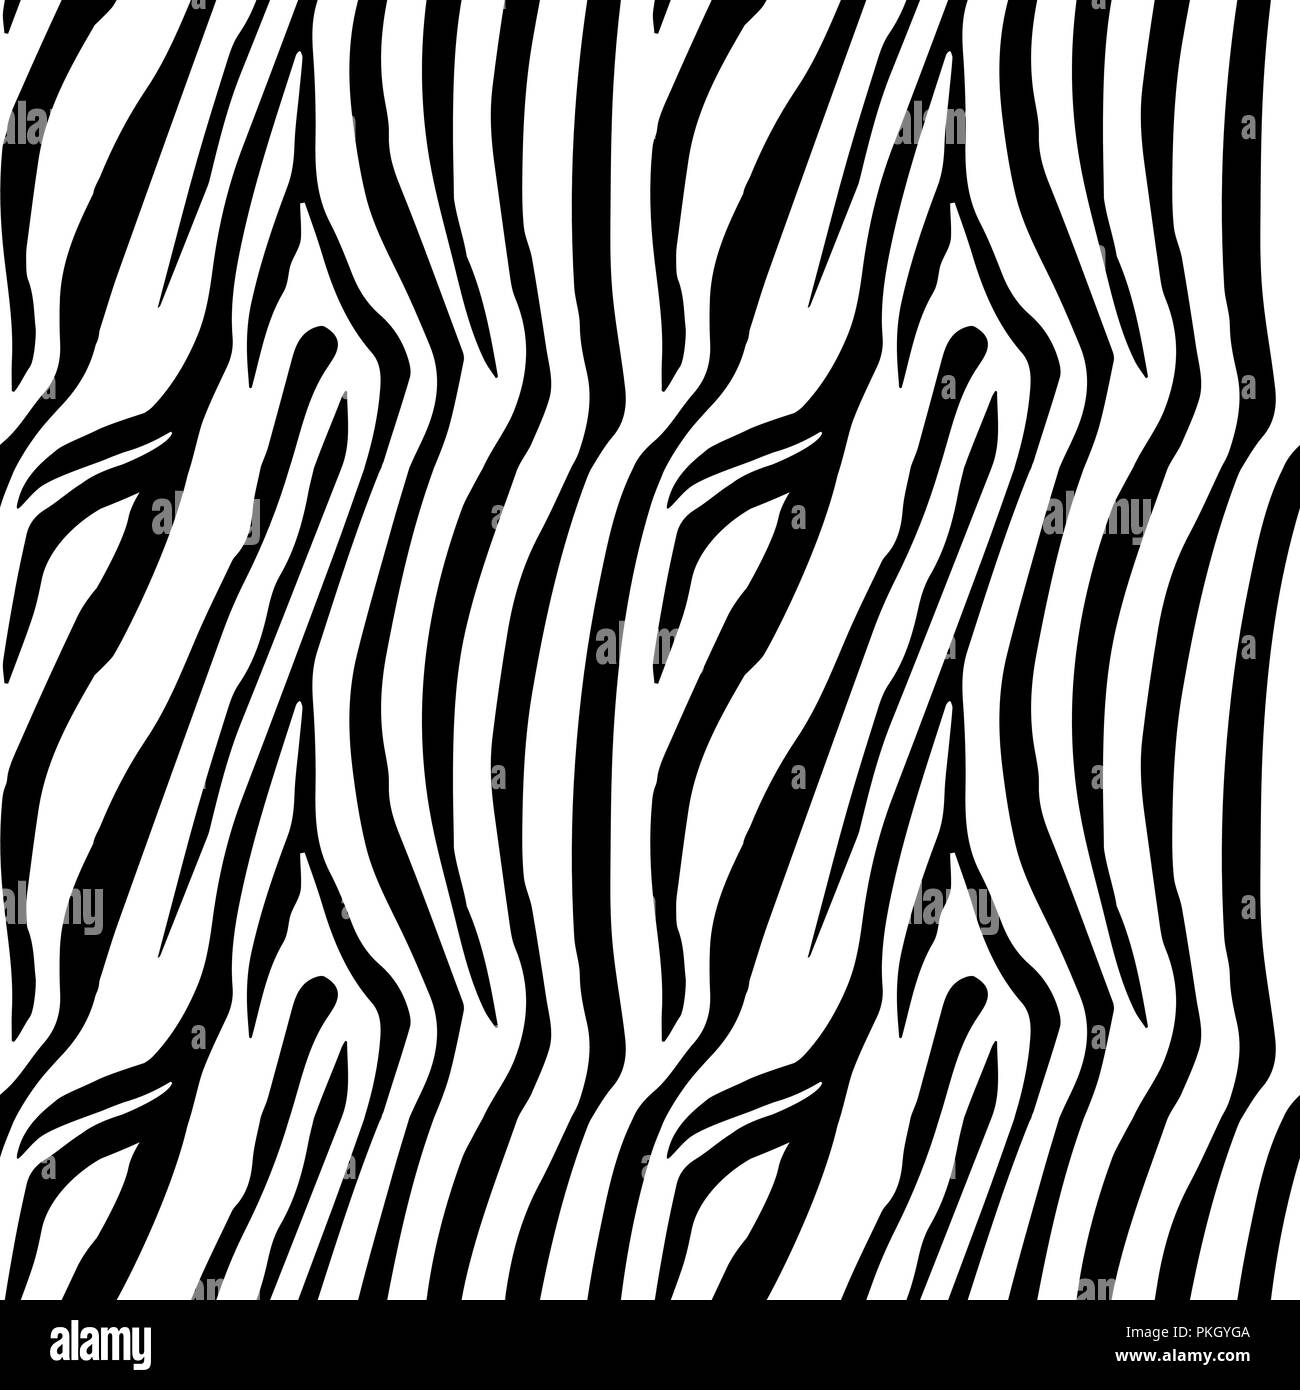 Zebra Stripes Seamless Pattern. Zebra print, animal skin, tiger stripes ...